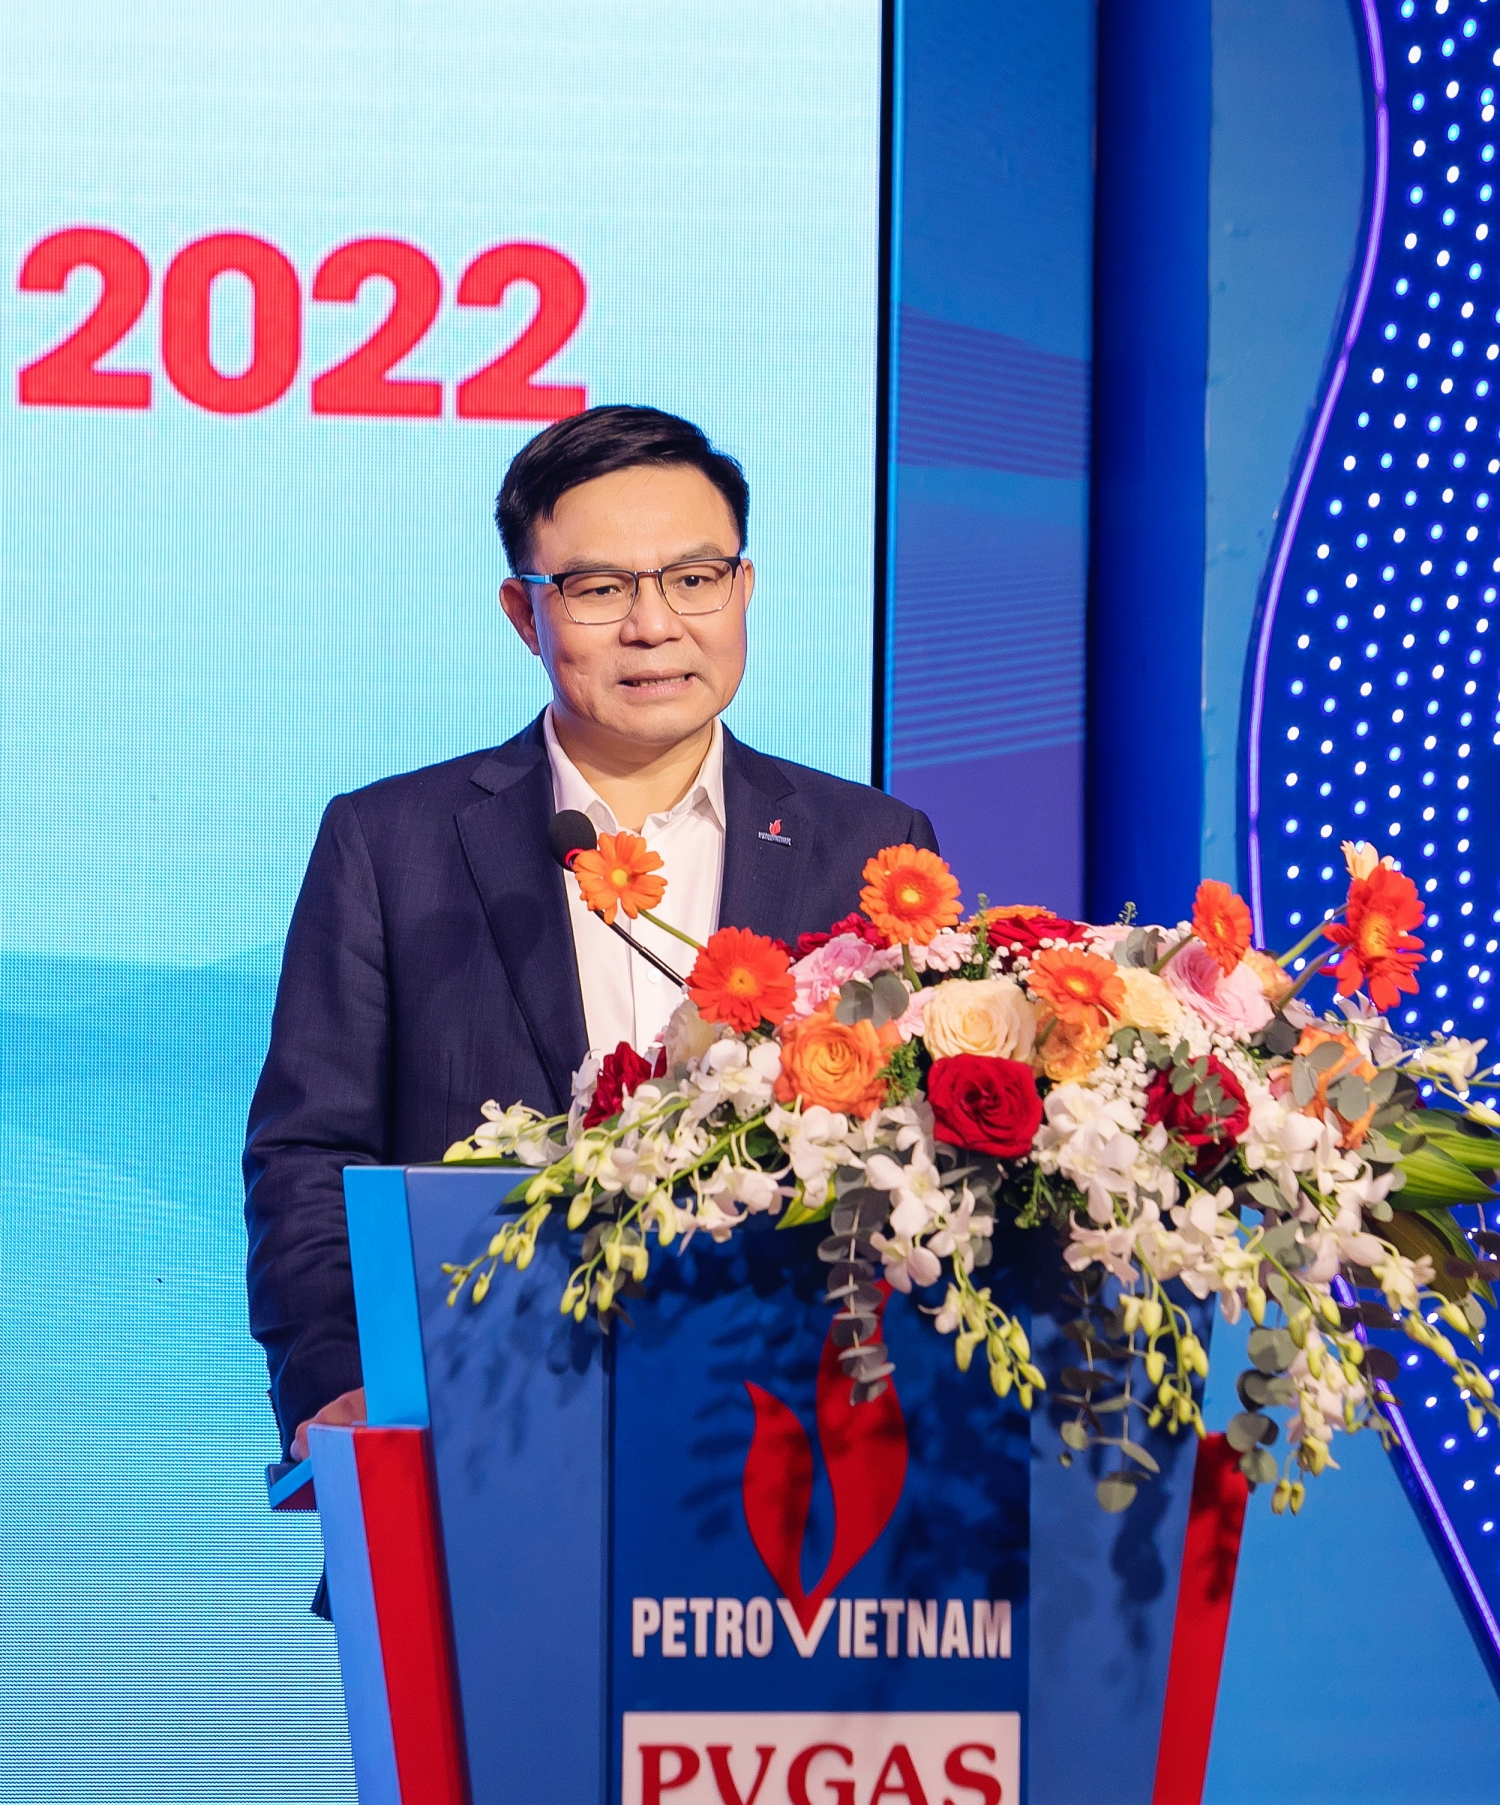 Ông Lê Mạnh Hùng – Tổng Giám đốc Petrovietnam phát biểu chúc mừng những thành tích nổi bật của PV GAS trong năm 2022 và chỉ đạo chương trình kế hoạch năm 2023